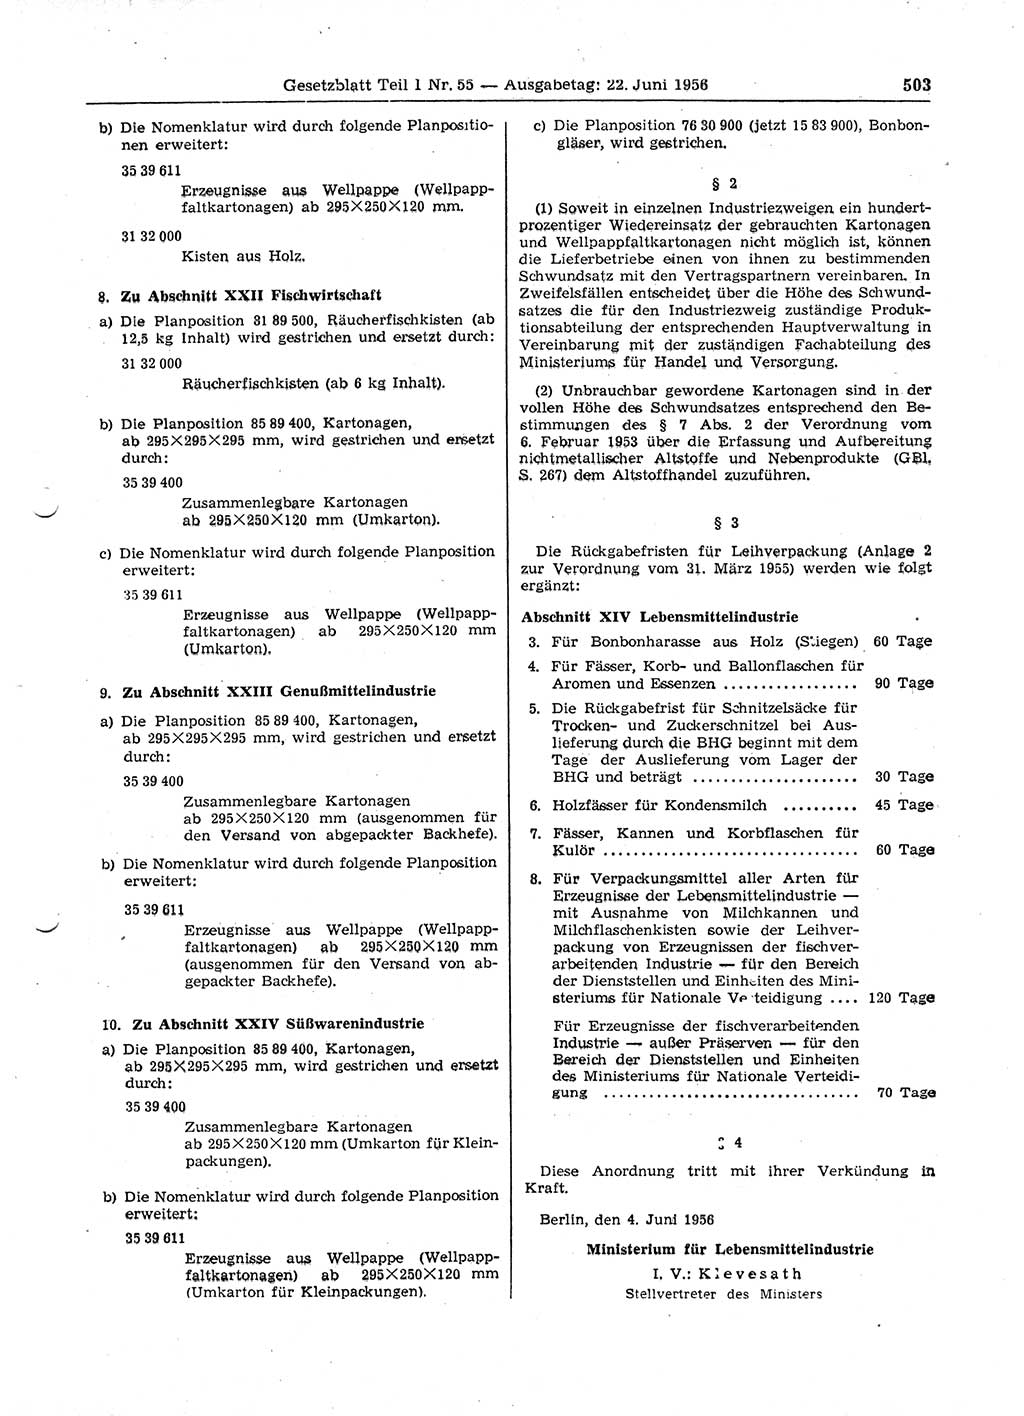 Gesetzblatt (GBl.) der Deutschen Demokratischen Republik (DDR) Teil Ⅰ 1956, Seite 503 (GBl. DDR Ⅰ 1956, S. 503)